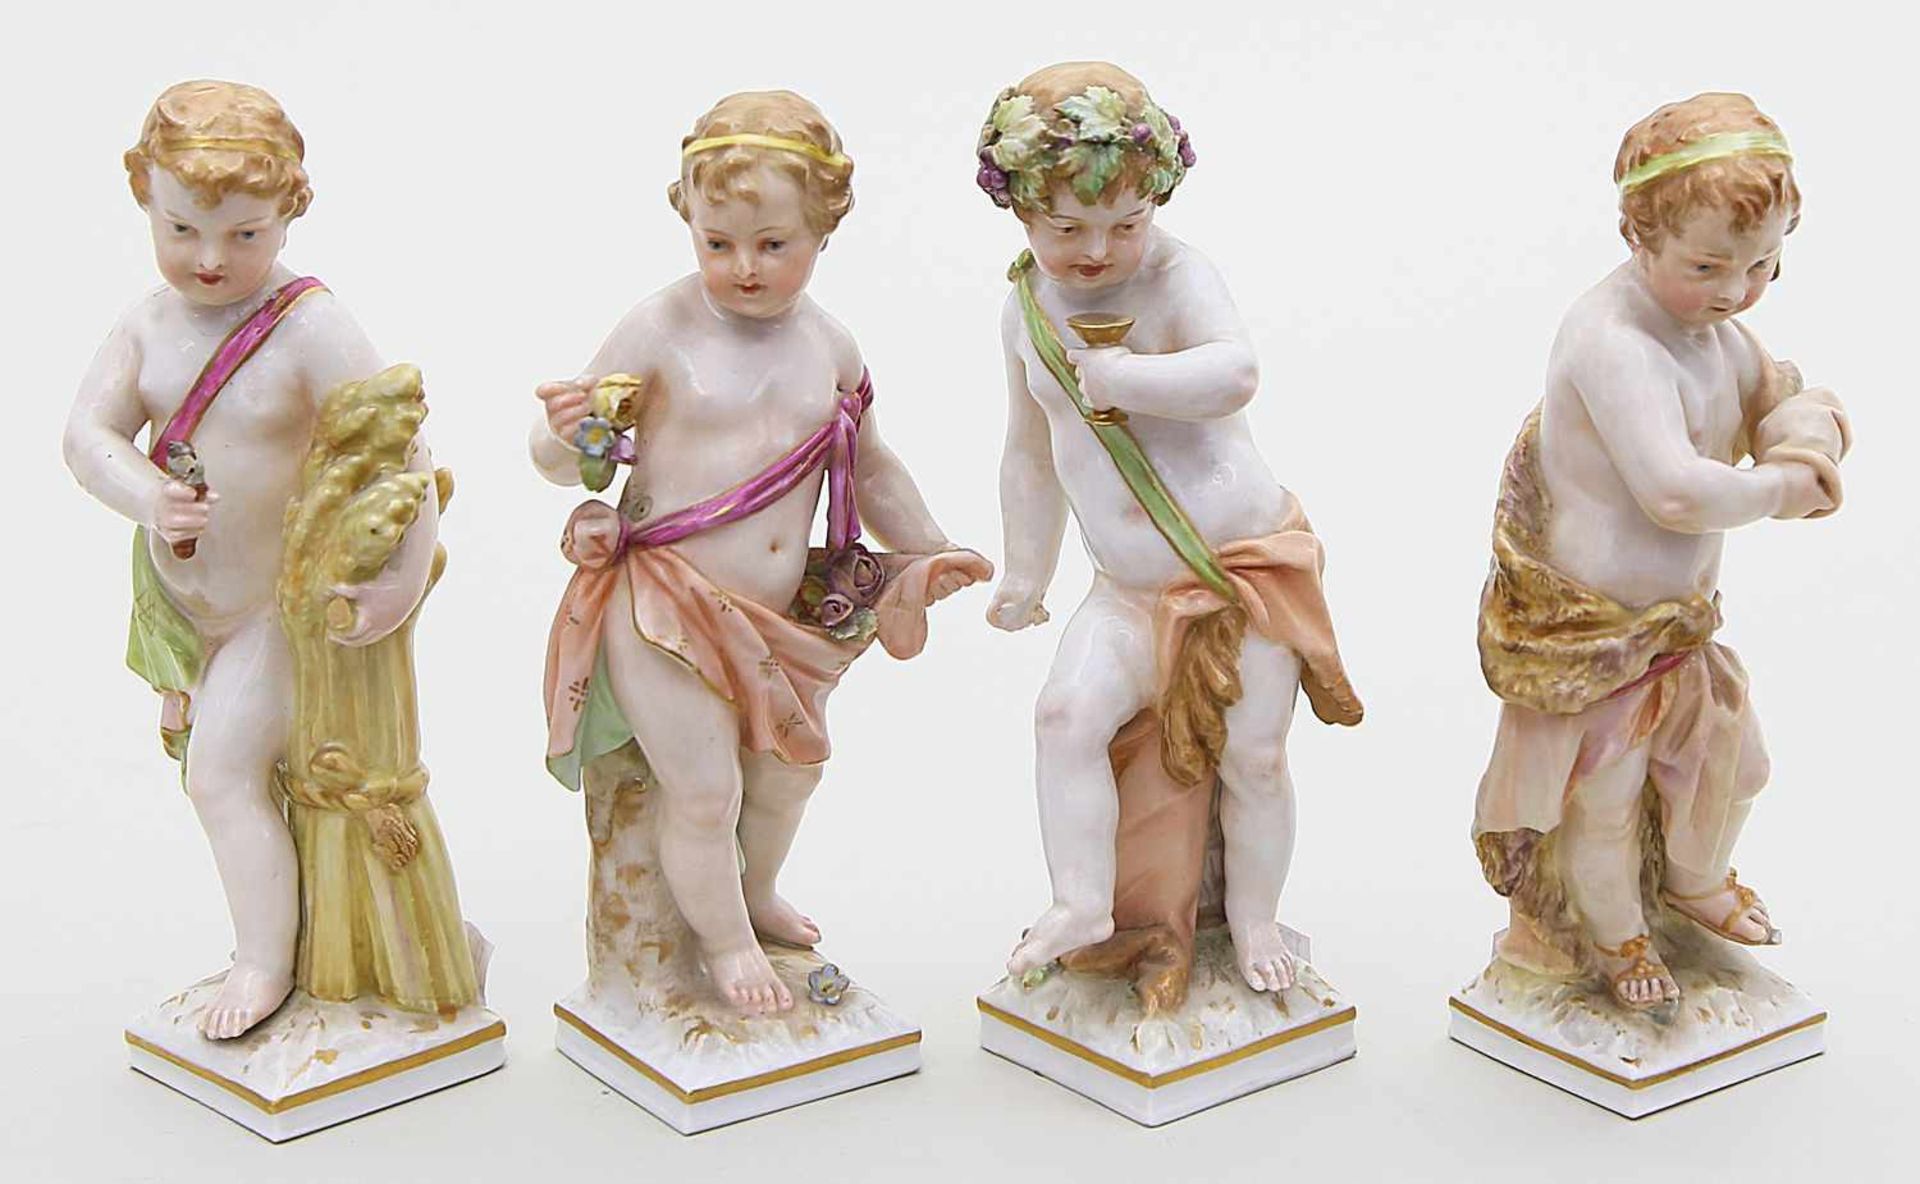 Meyer, Friedrich EliasSerie von vier allegorischen Skulpturen der "Jahreszeiten". Bunt bemalt. Teils